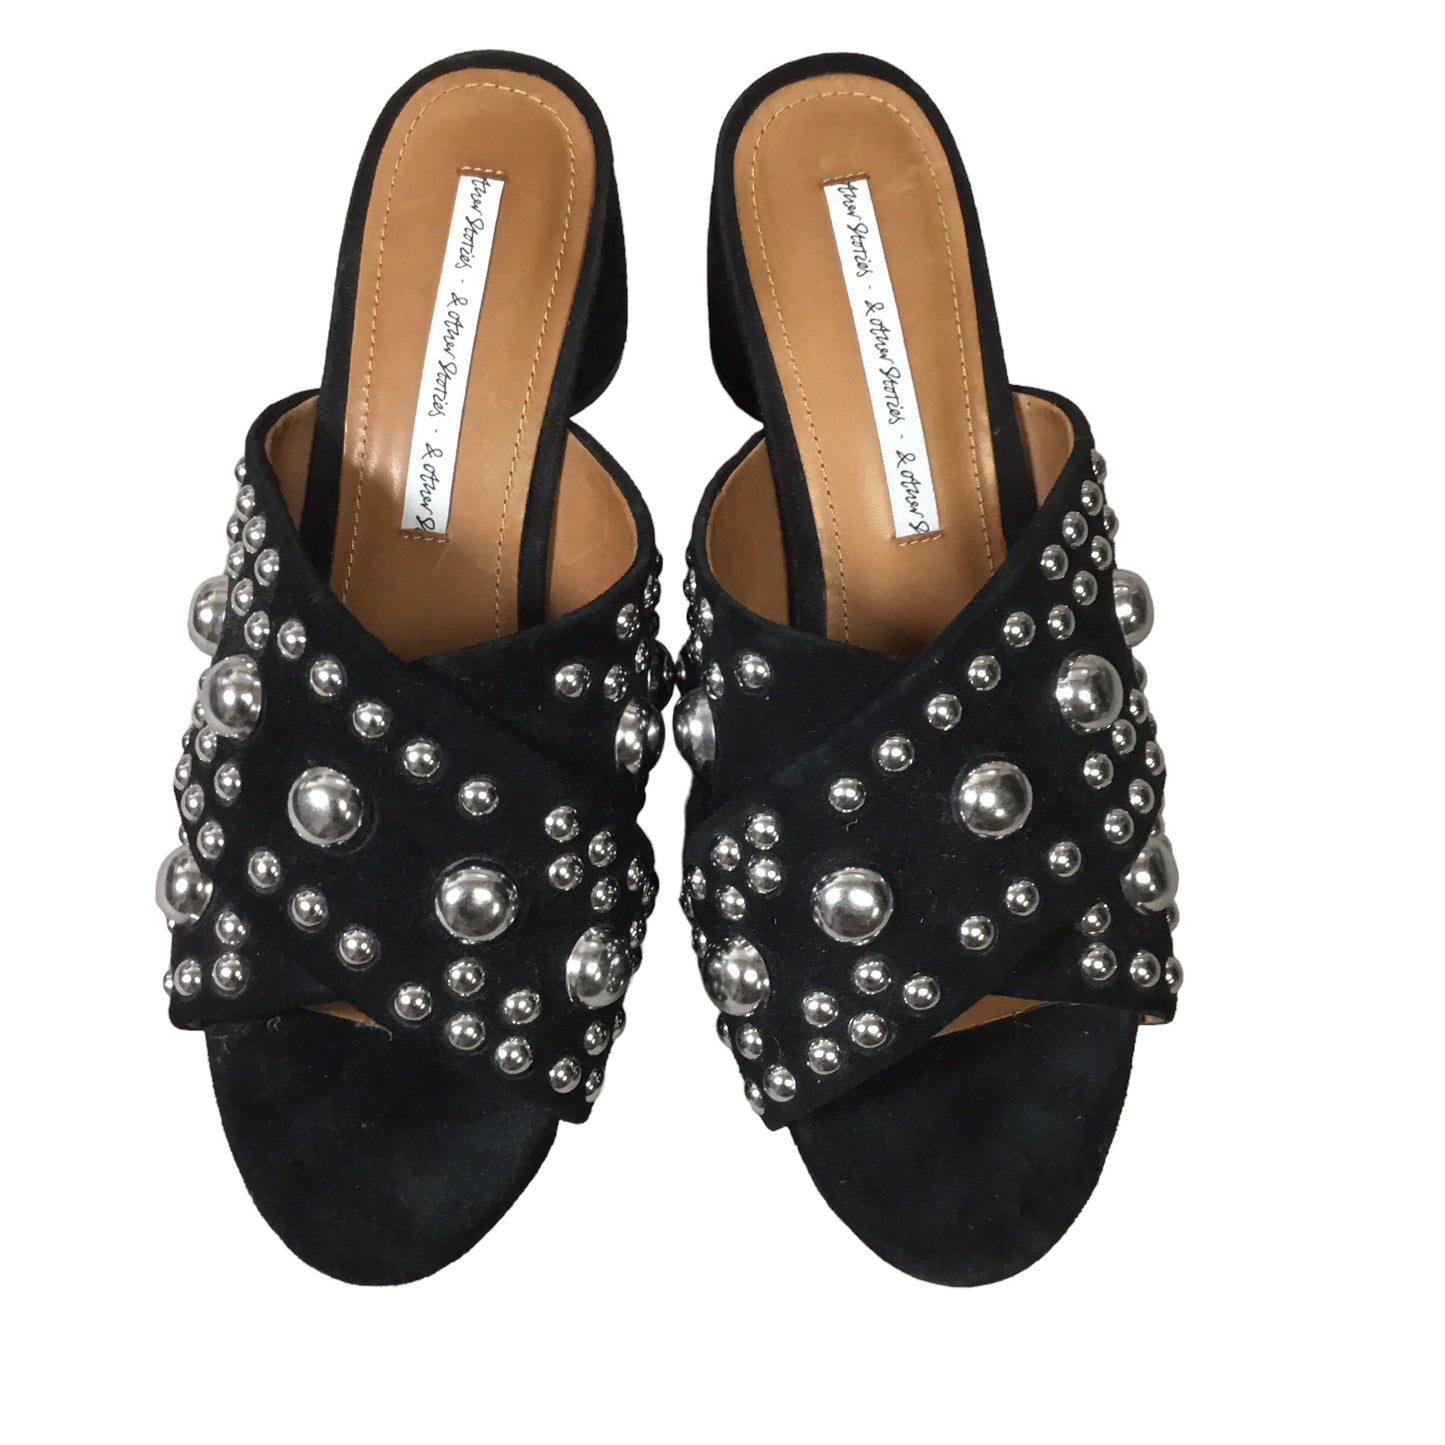 Black Shoes Heels Block Cmb, Size 7